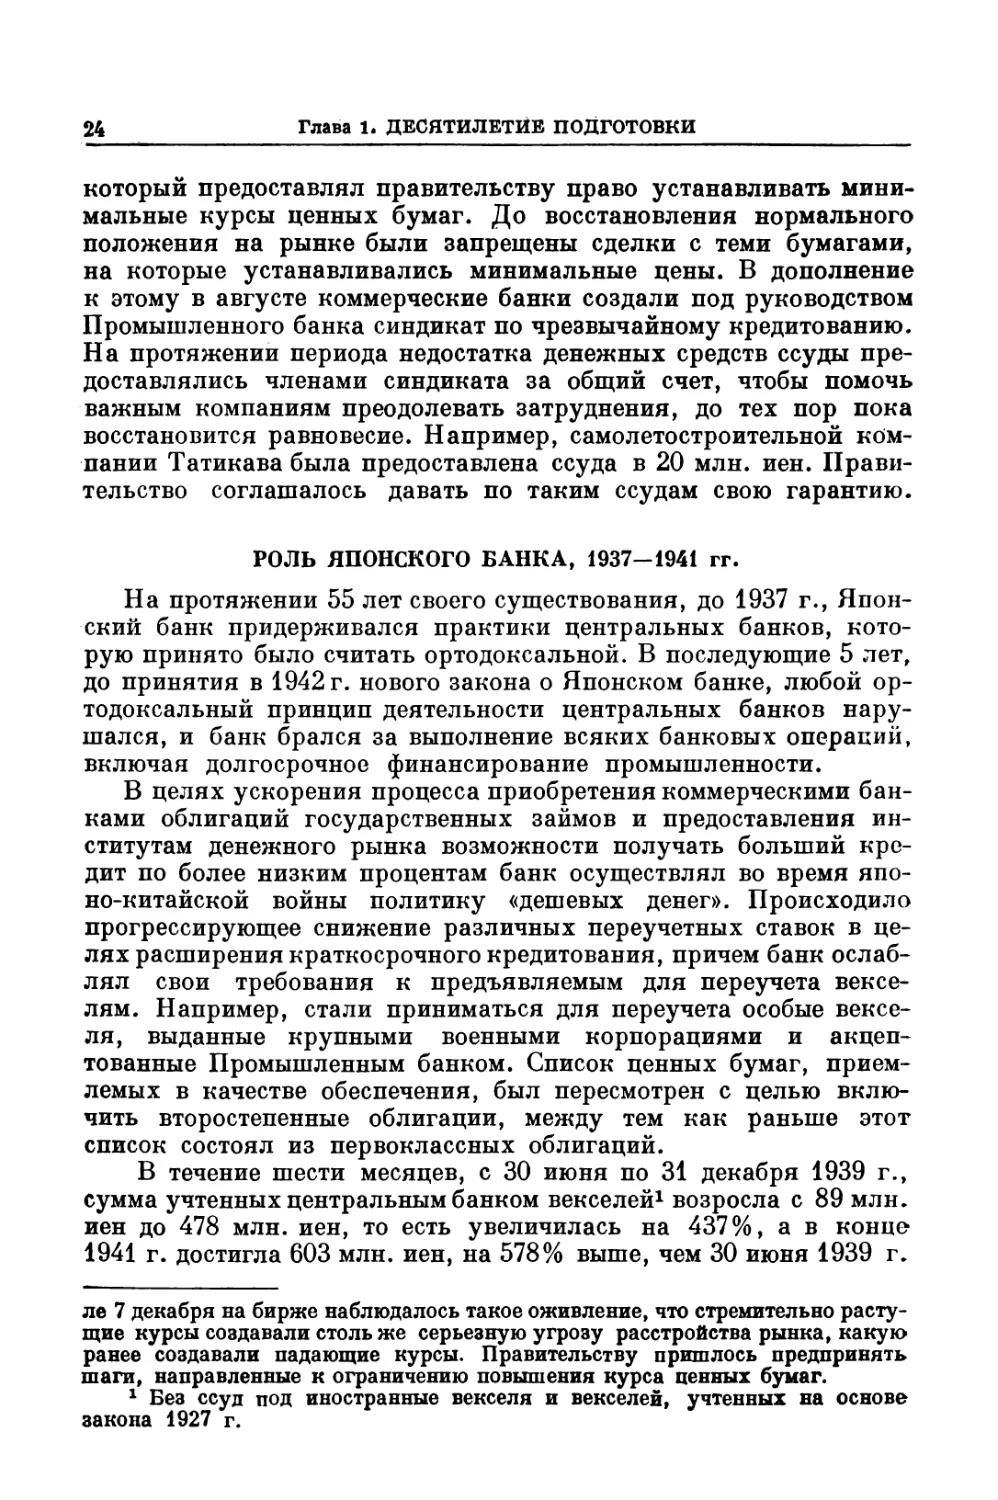 РОЛЬ ЯПОНСКОГО БАНКА, 1937-1941 гг.